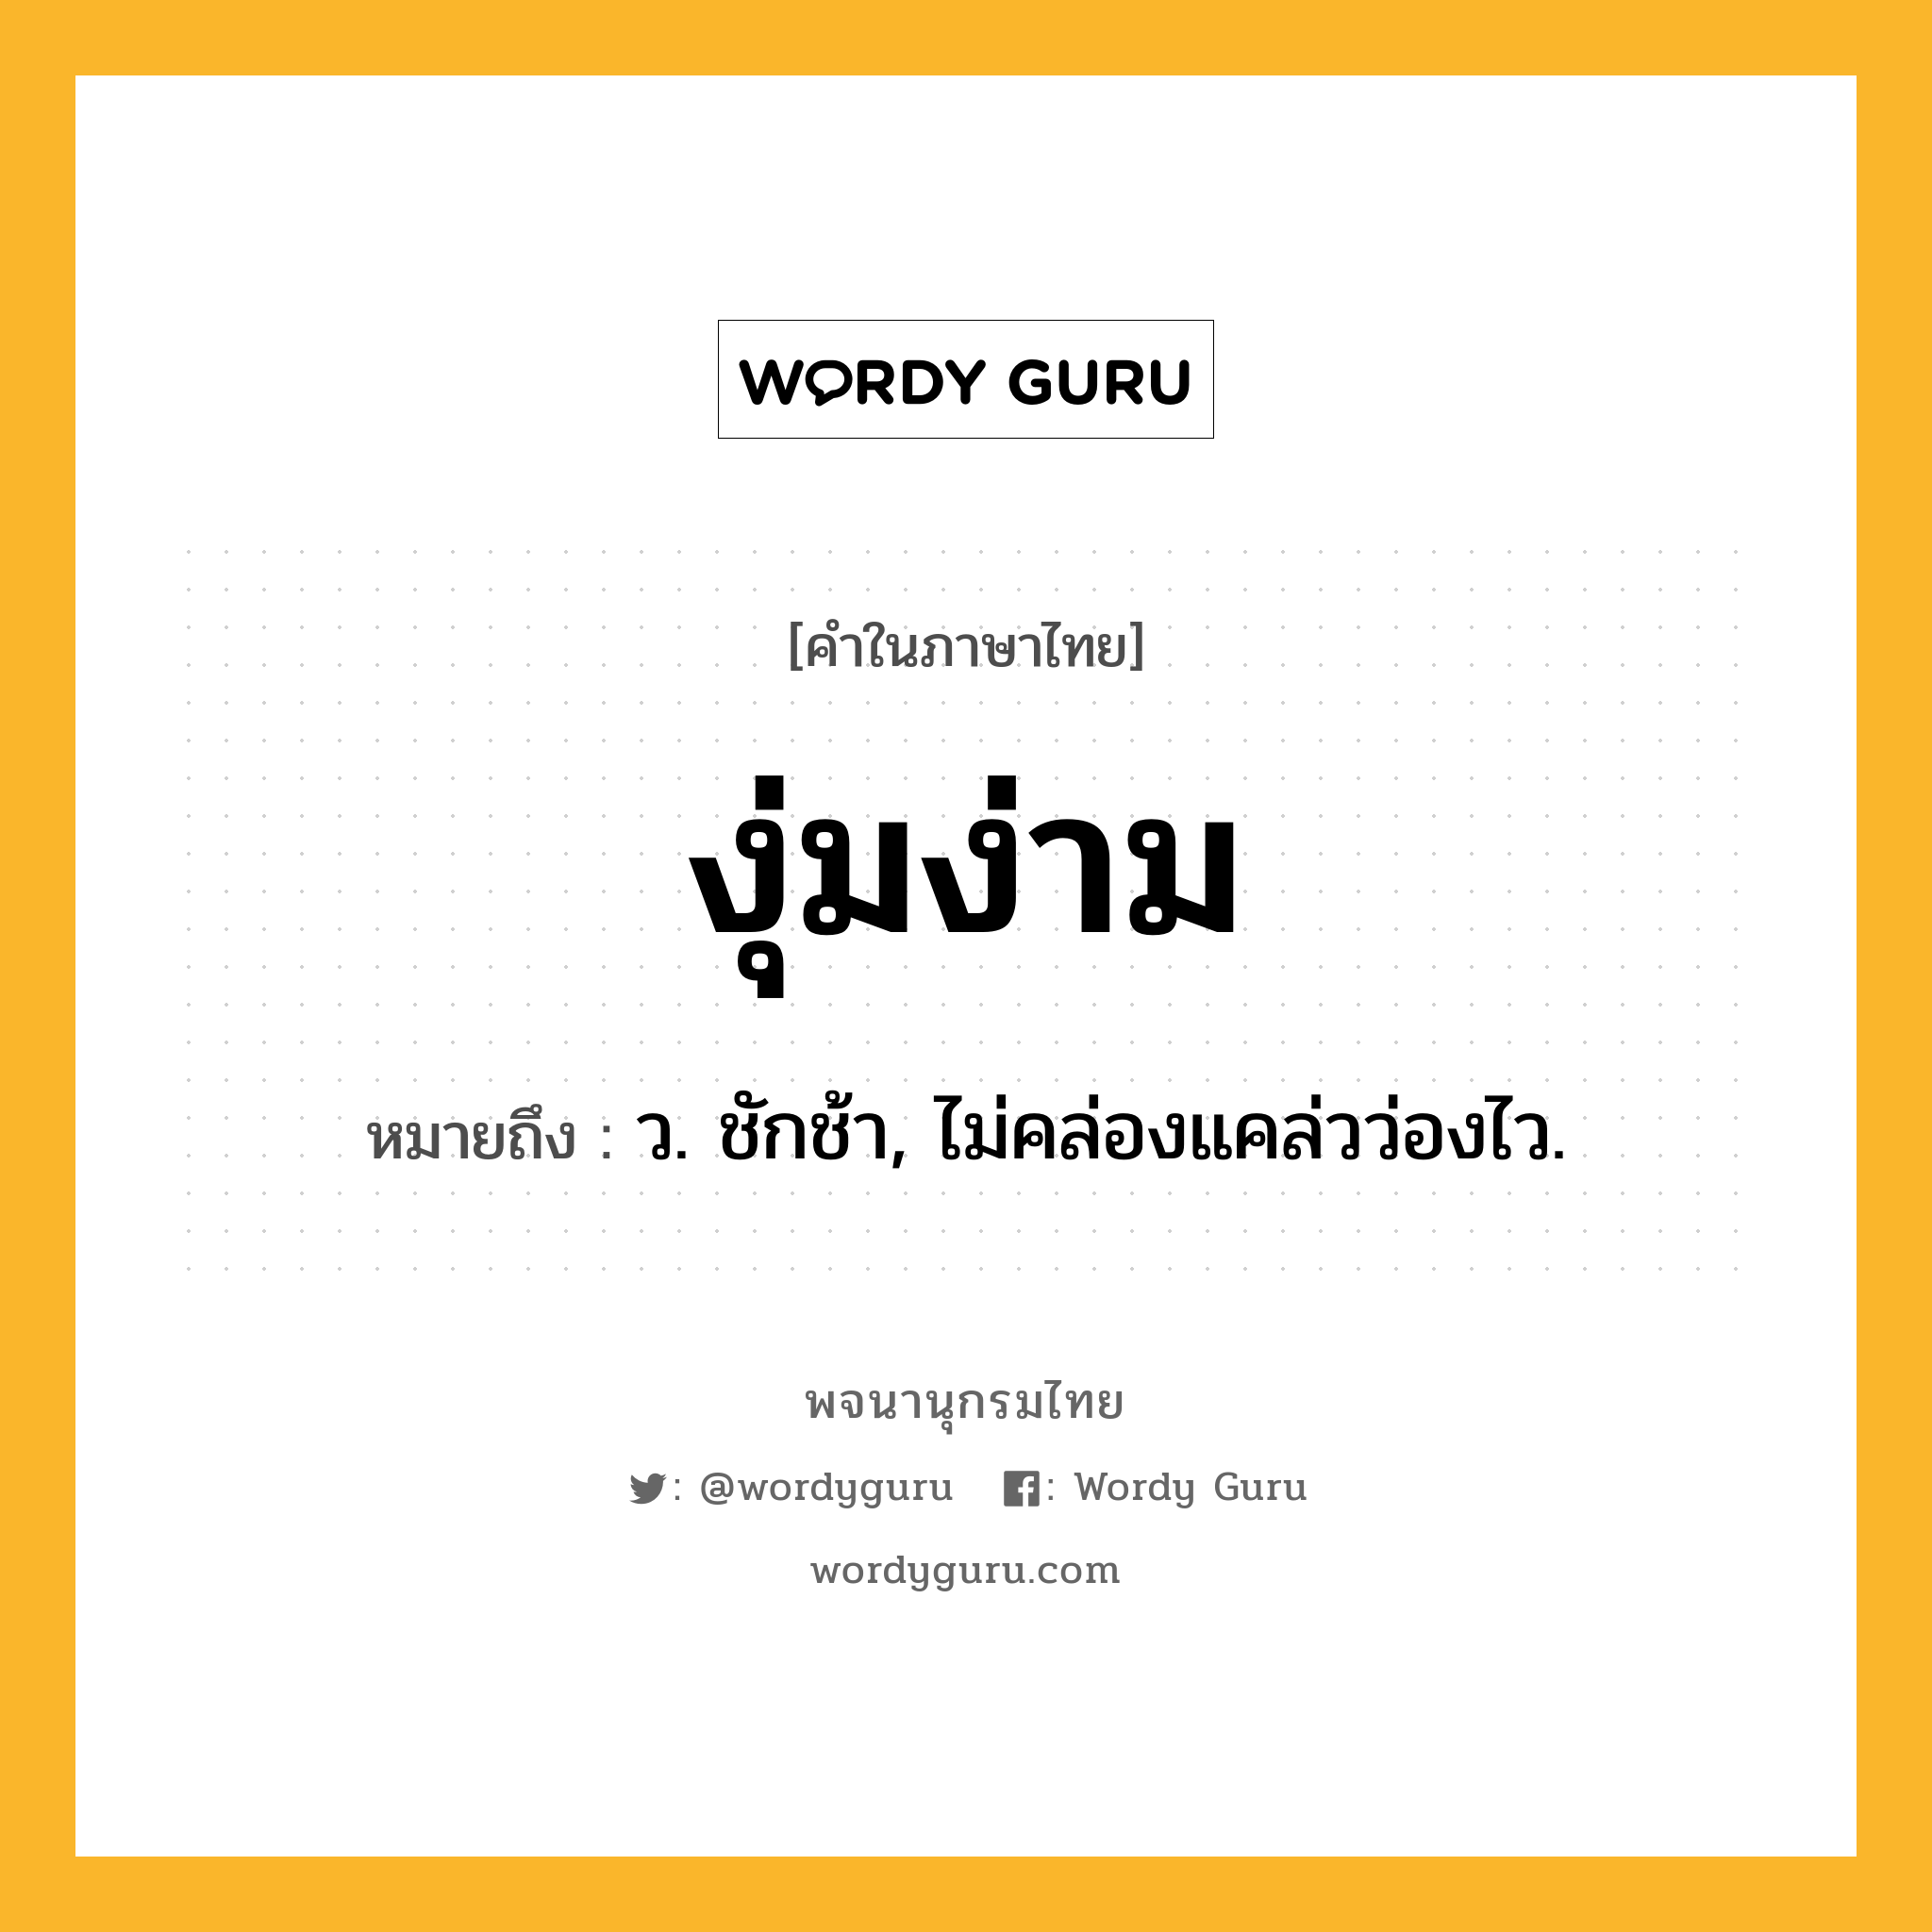 งุ่มง่าม หมายถึงอะไร?, คำในภาษาไทย งุ่มง่าม หมายถึง ว. ชักช้า, ไม่คล่องแคล่วว่องไว.